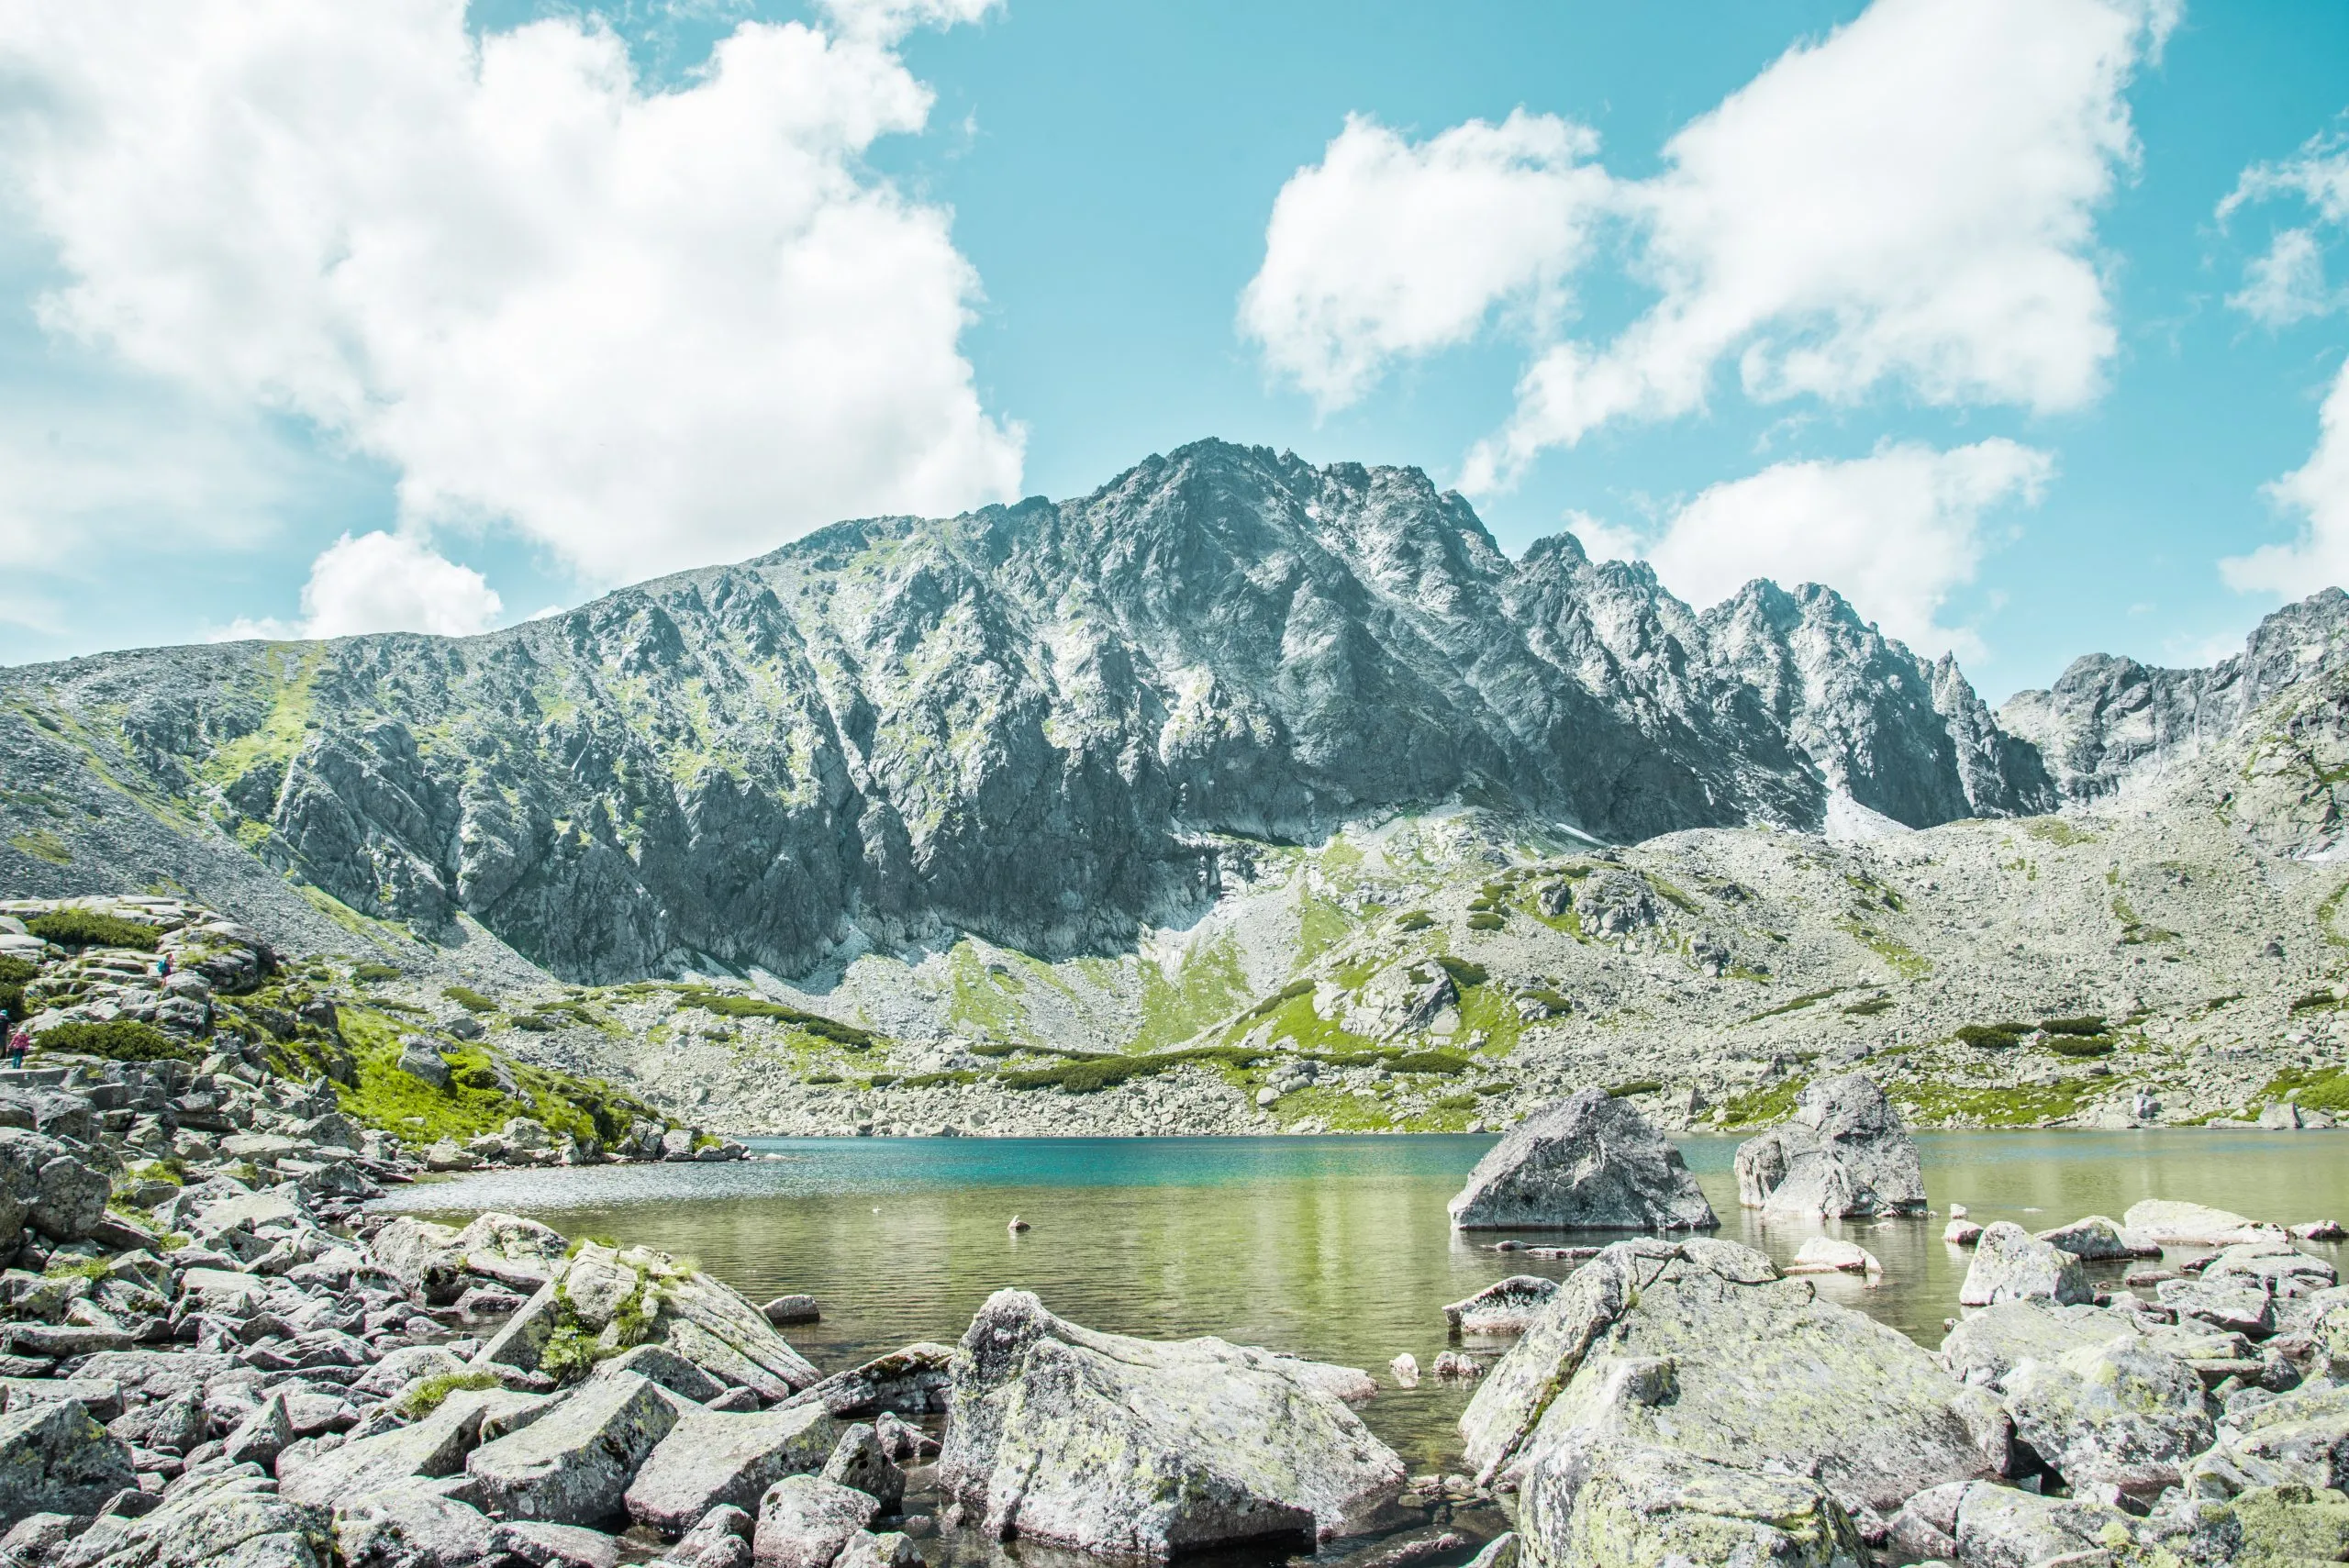 Parc national des Hautes Tatras, Slovaquie, Europe. Chemin de randonnée menant au lac de montagne Batizovske pleso et à Sliezsky dom (maison sélésienne). Paysage d'été avec ciel bleu, soleil brillant et fleurs des Tatras protégées.